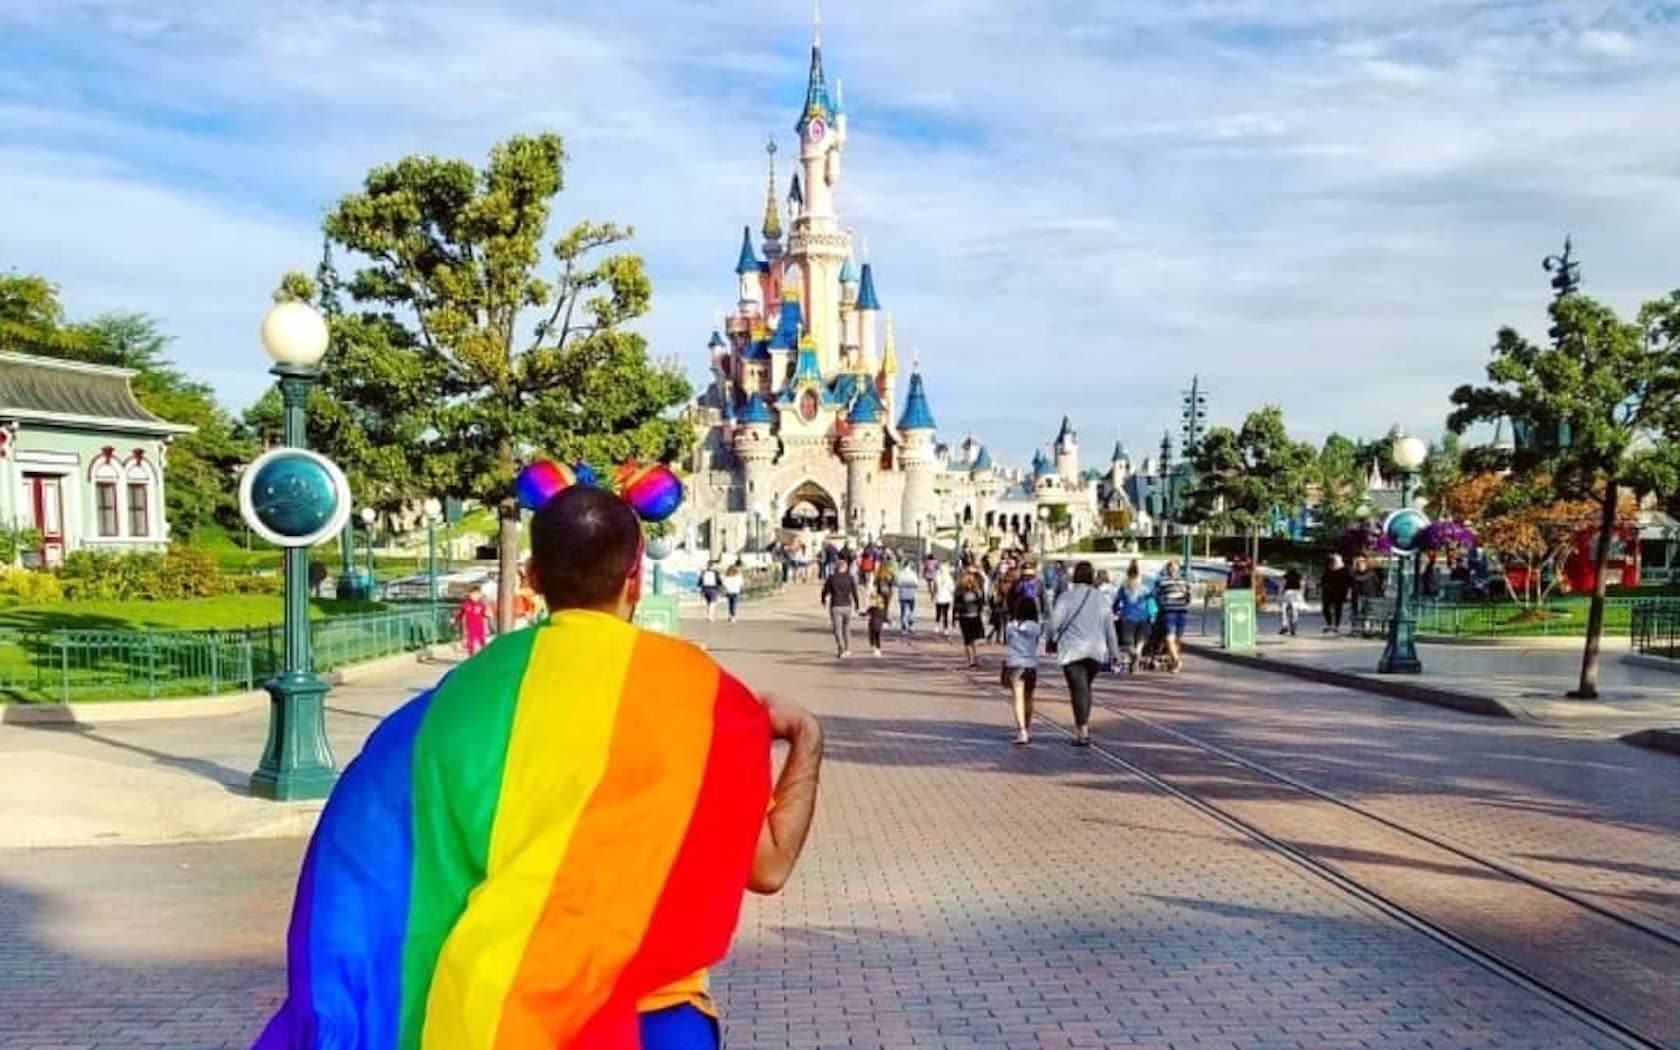 Disney revela primeira protagonista bissexual da história: Conheça